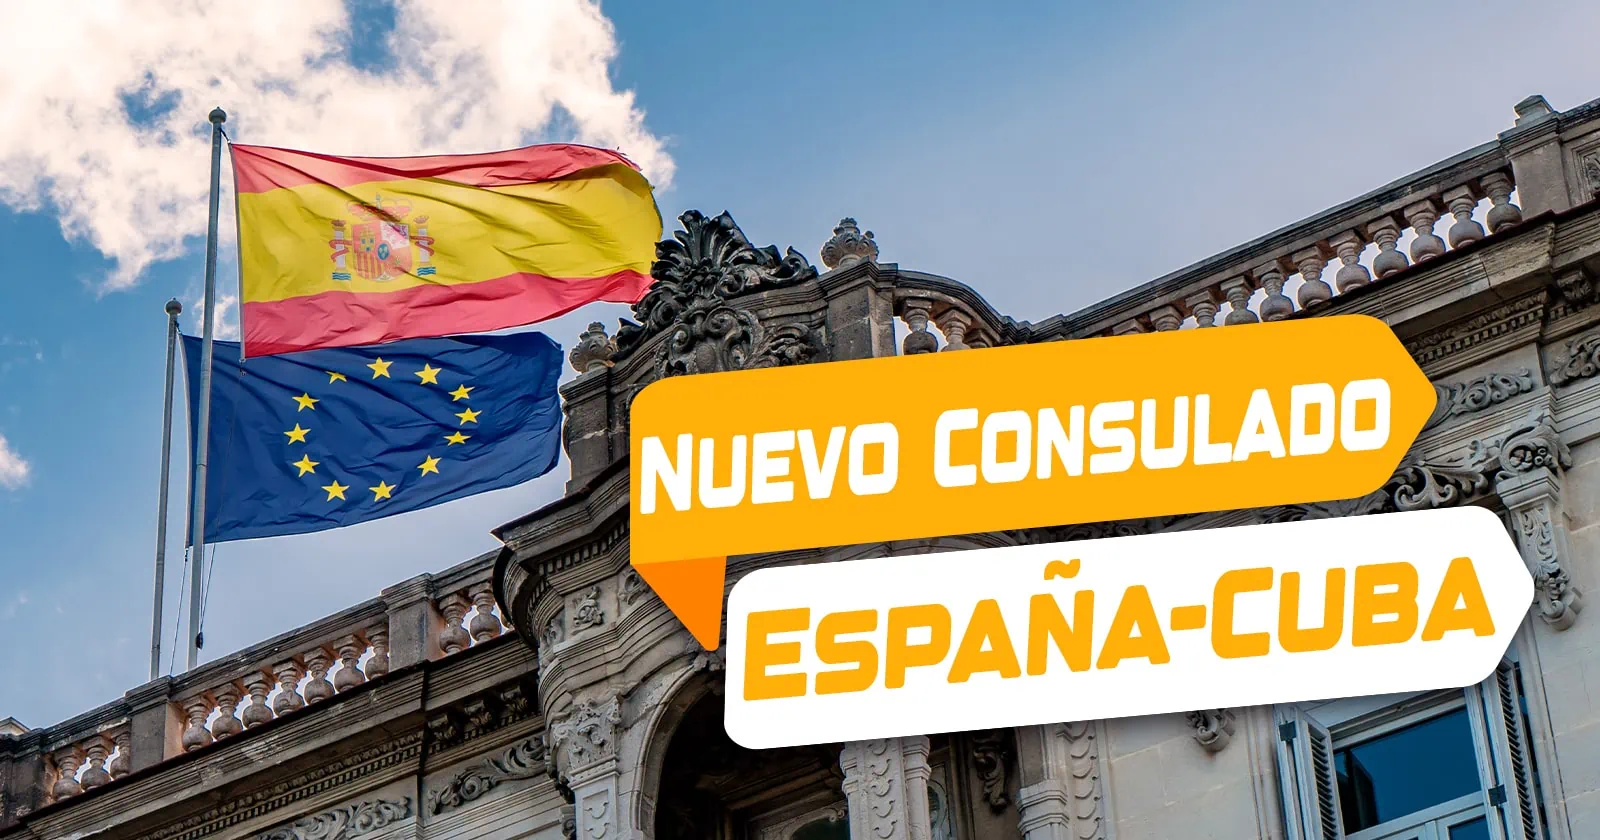 Aprueban Nuevo Consulado General de España en Camagüey y se Prevé Apertura en Próximos Meses